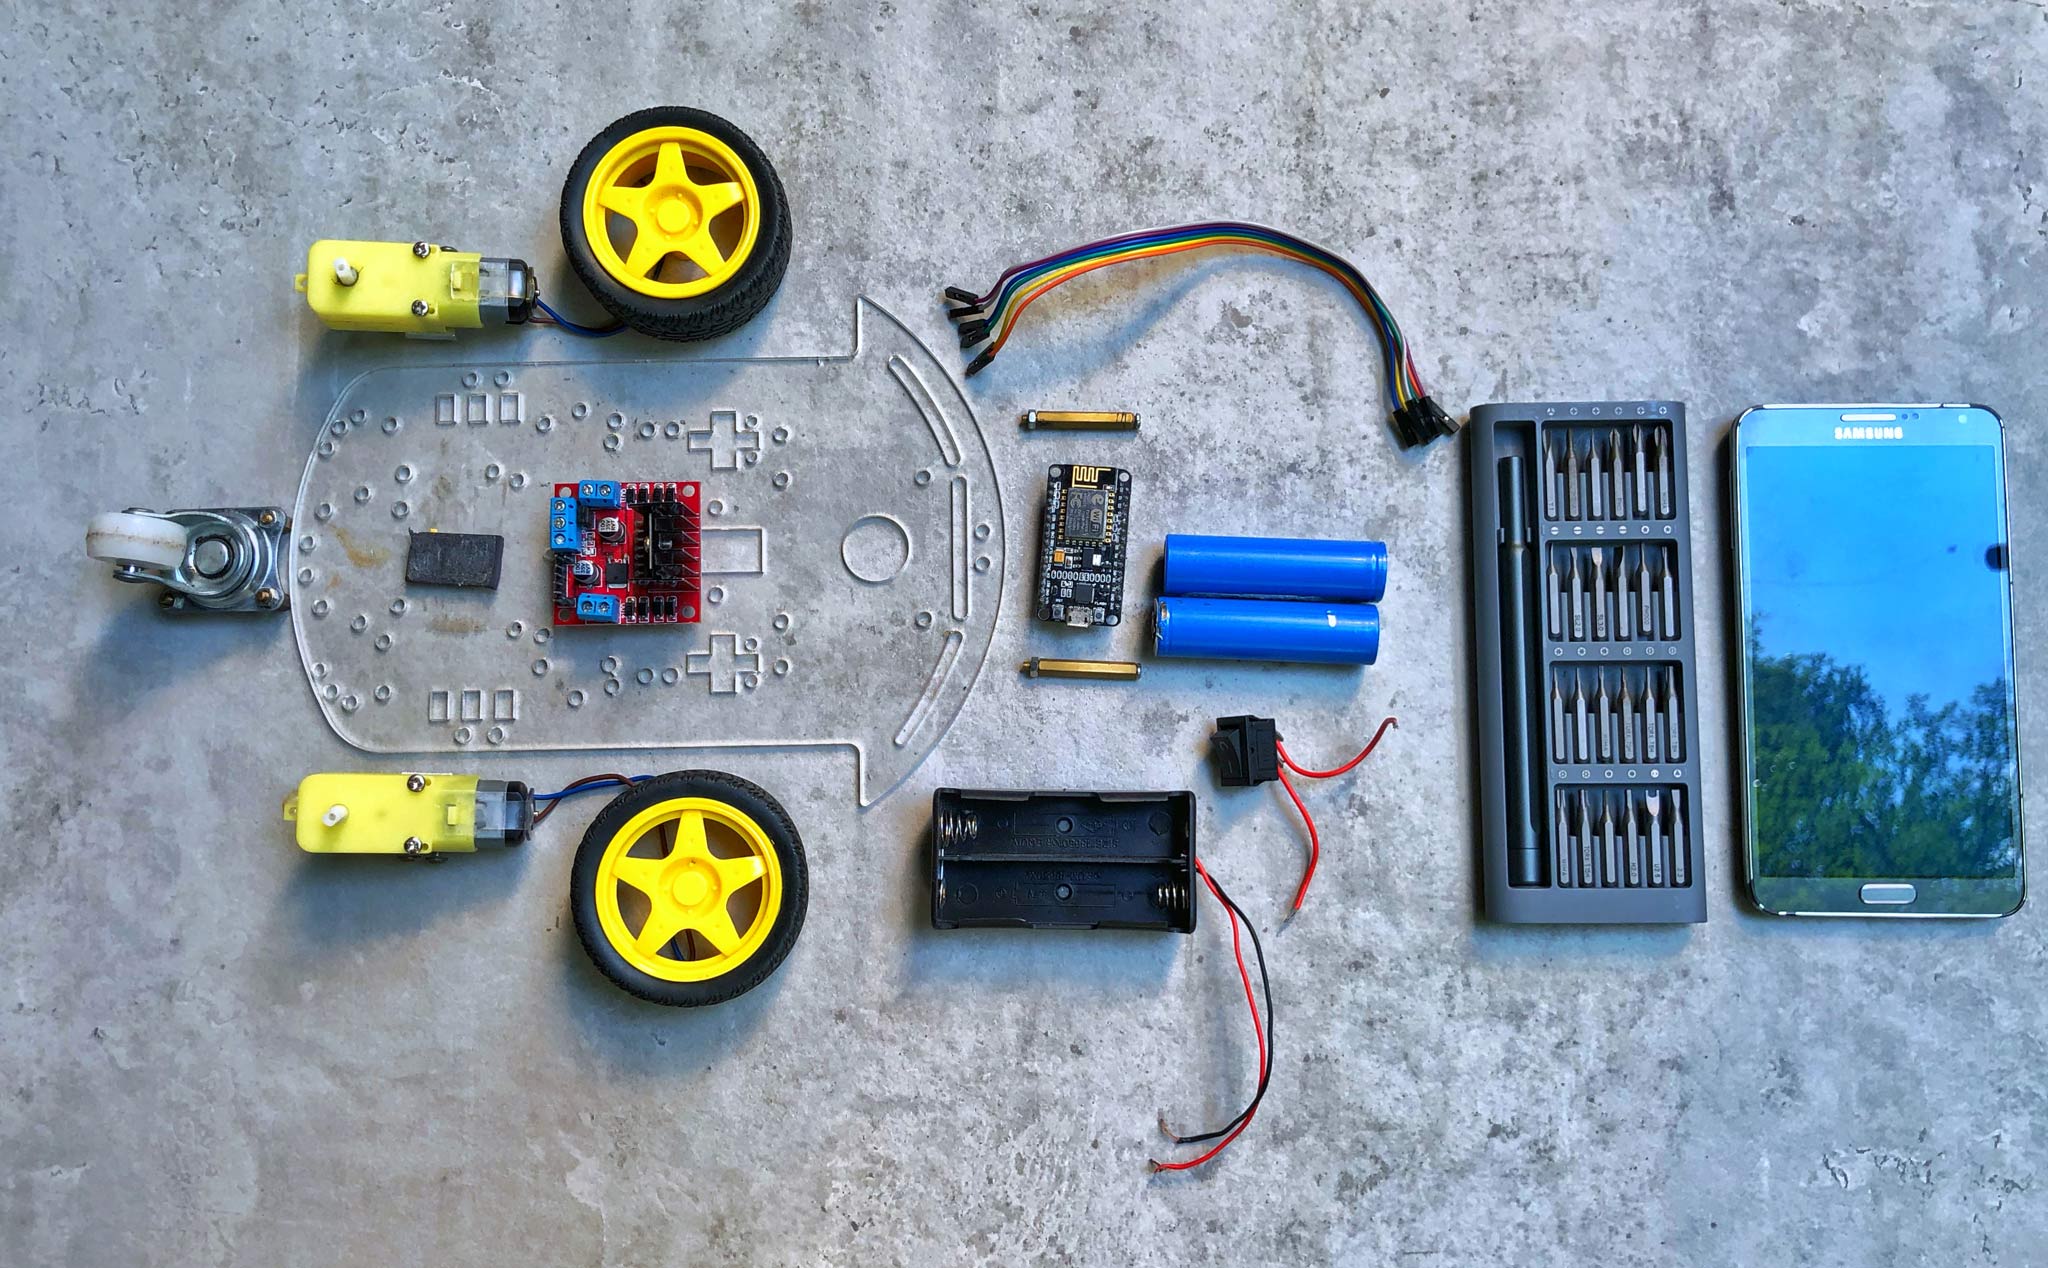 [DIY] Tự ráp xe robot điều khiển trên smartphone giá 460 ngàn